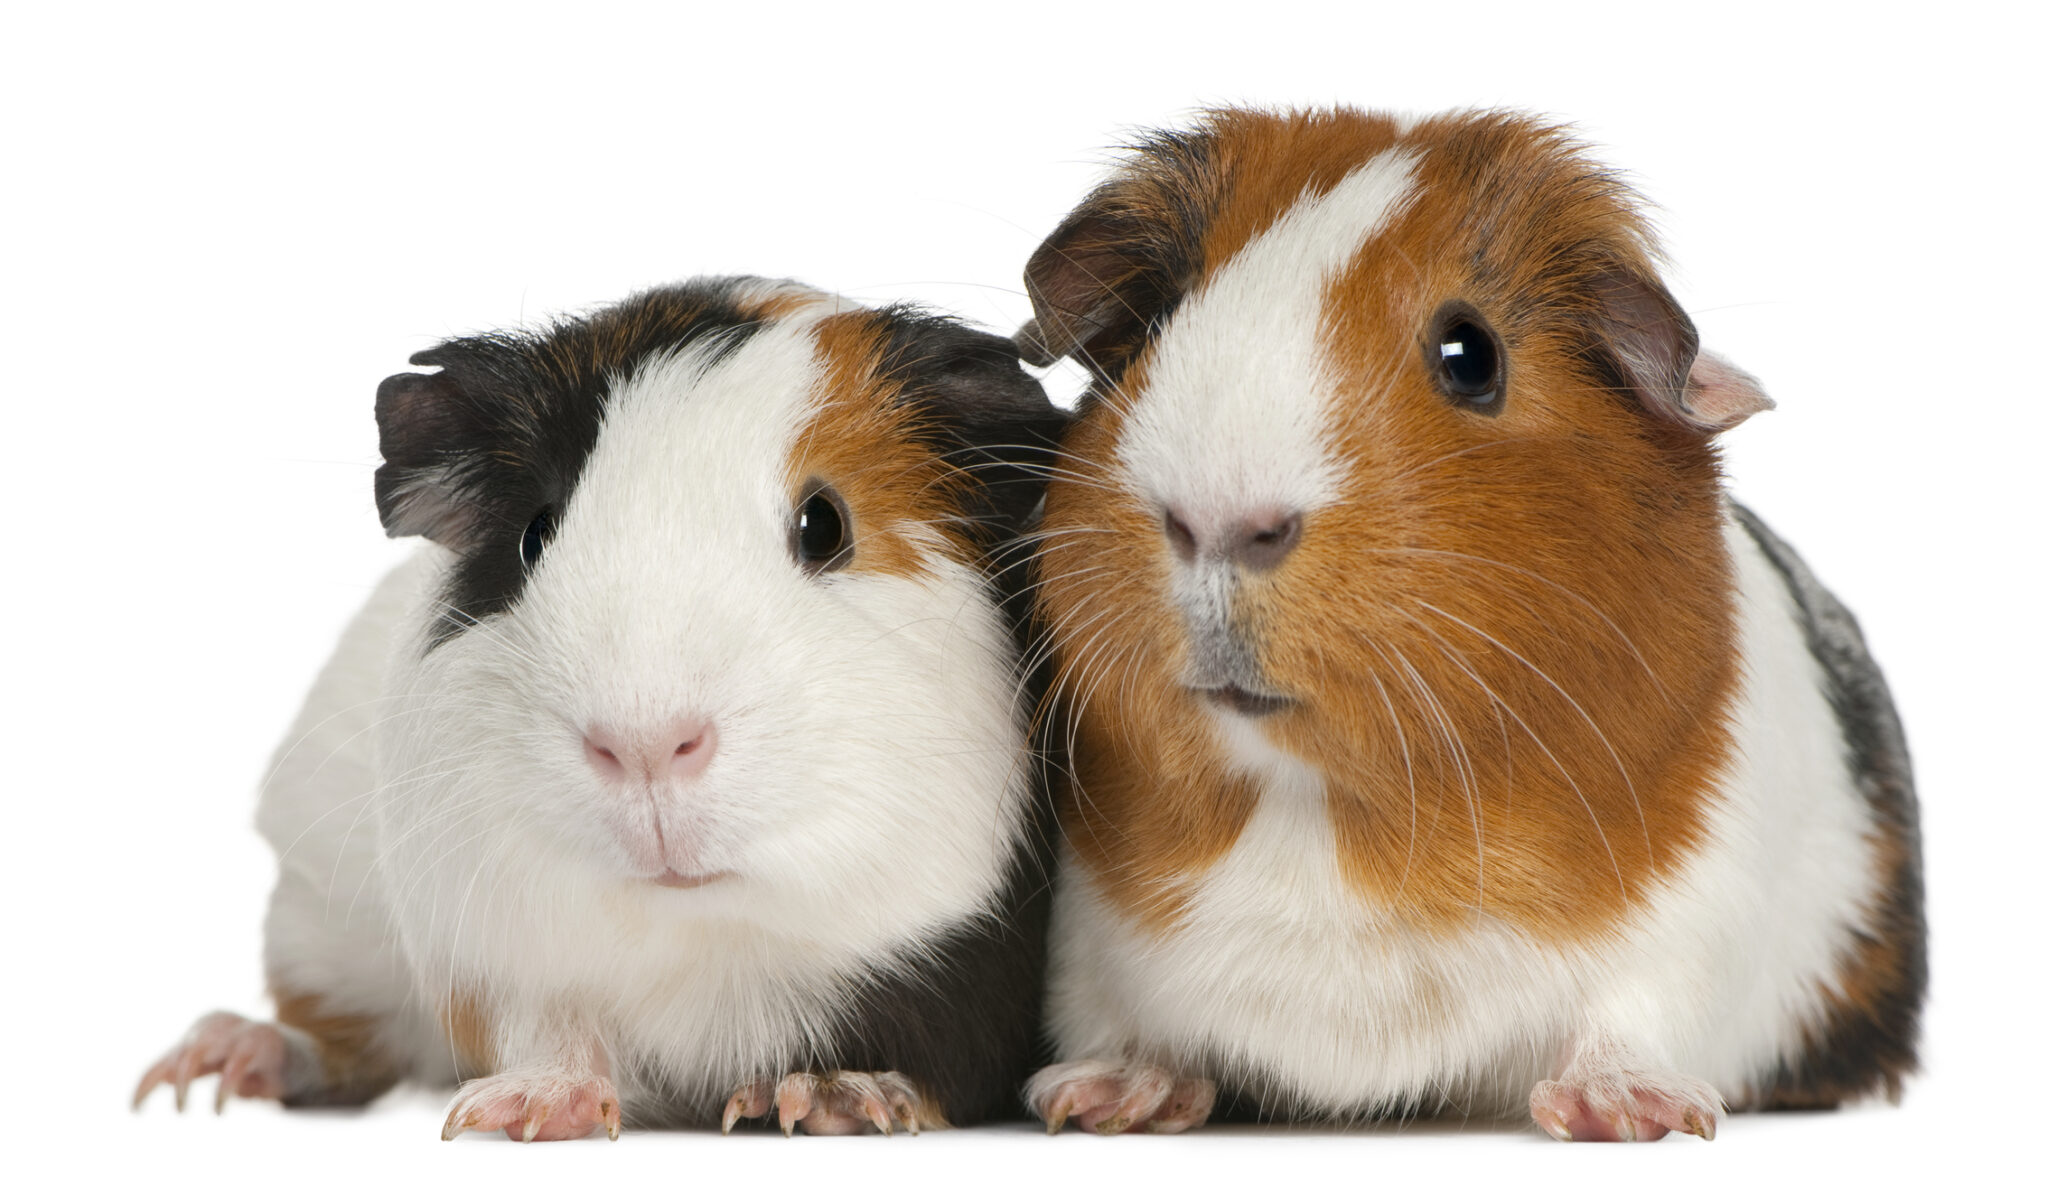 iki guinea pig yan yana